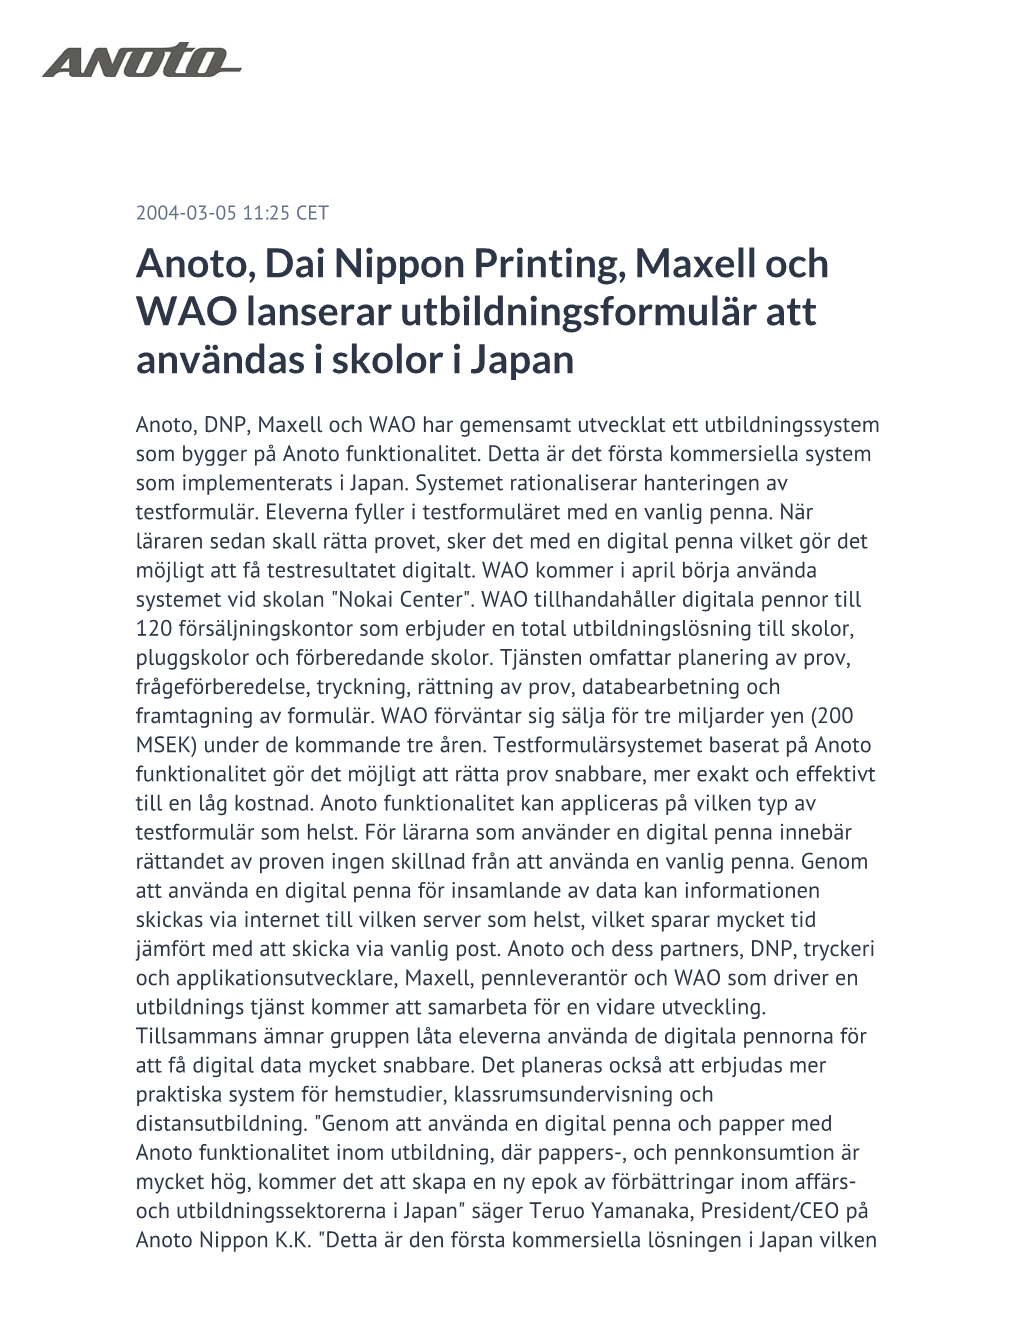 Anoto, Dai Nippon Printing, Maxell Och WAO Lanserar Utbildningsformulär Att Användas I Skolor I Japan